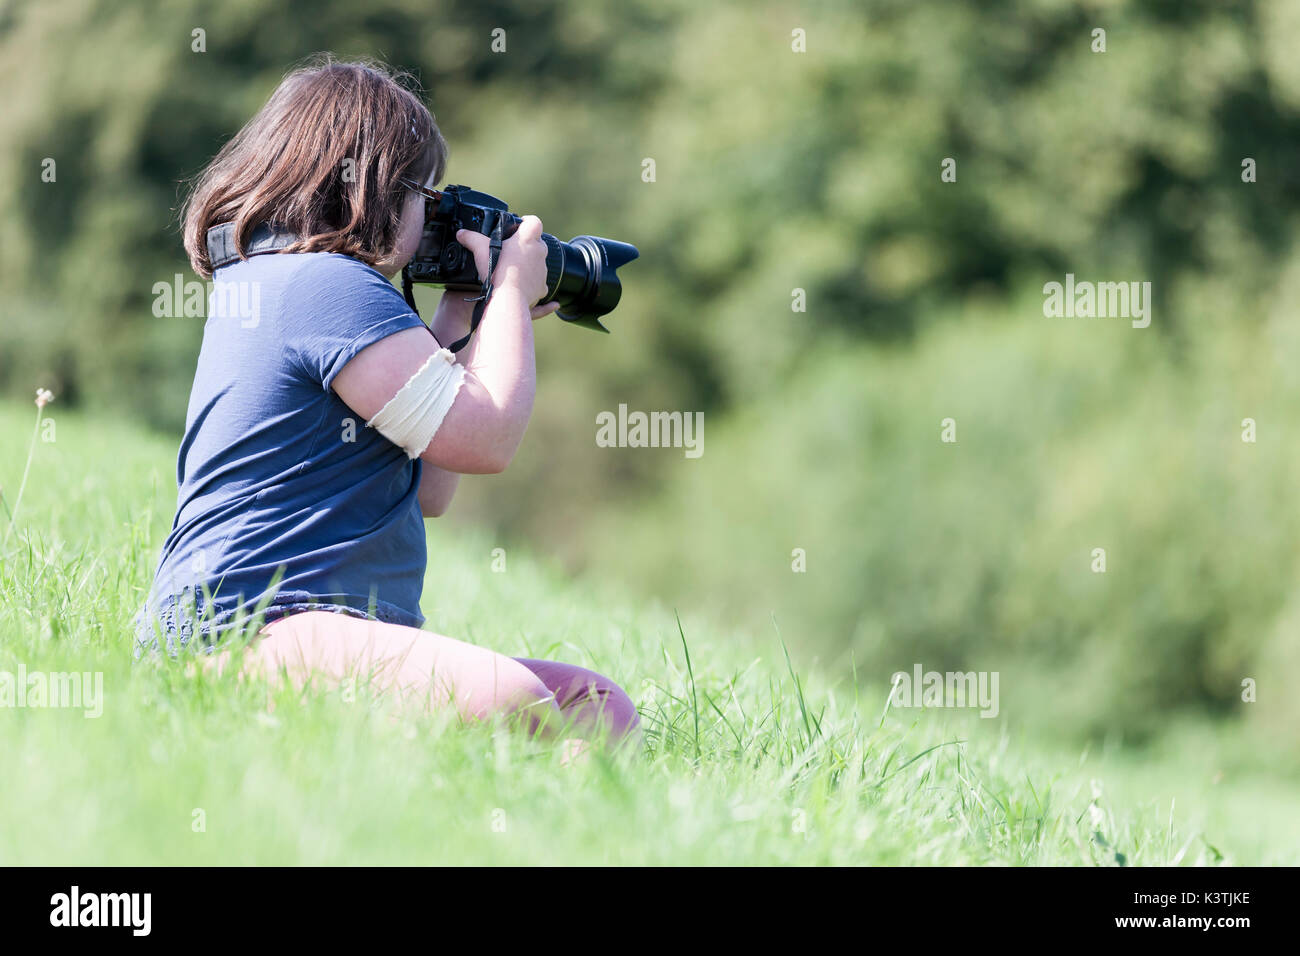 Ragazza giovane con una fotocamera Canon. Foto Stock